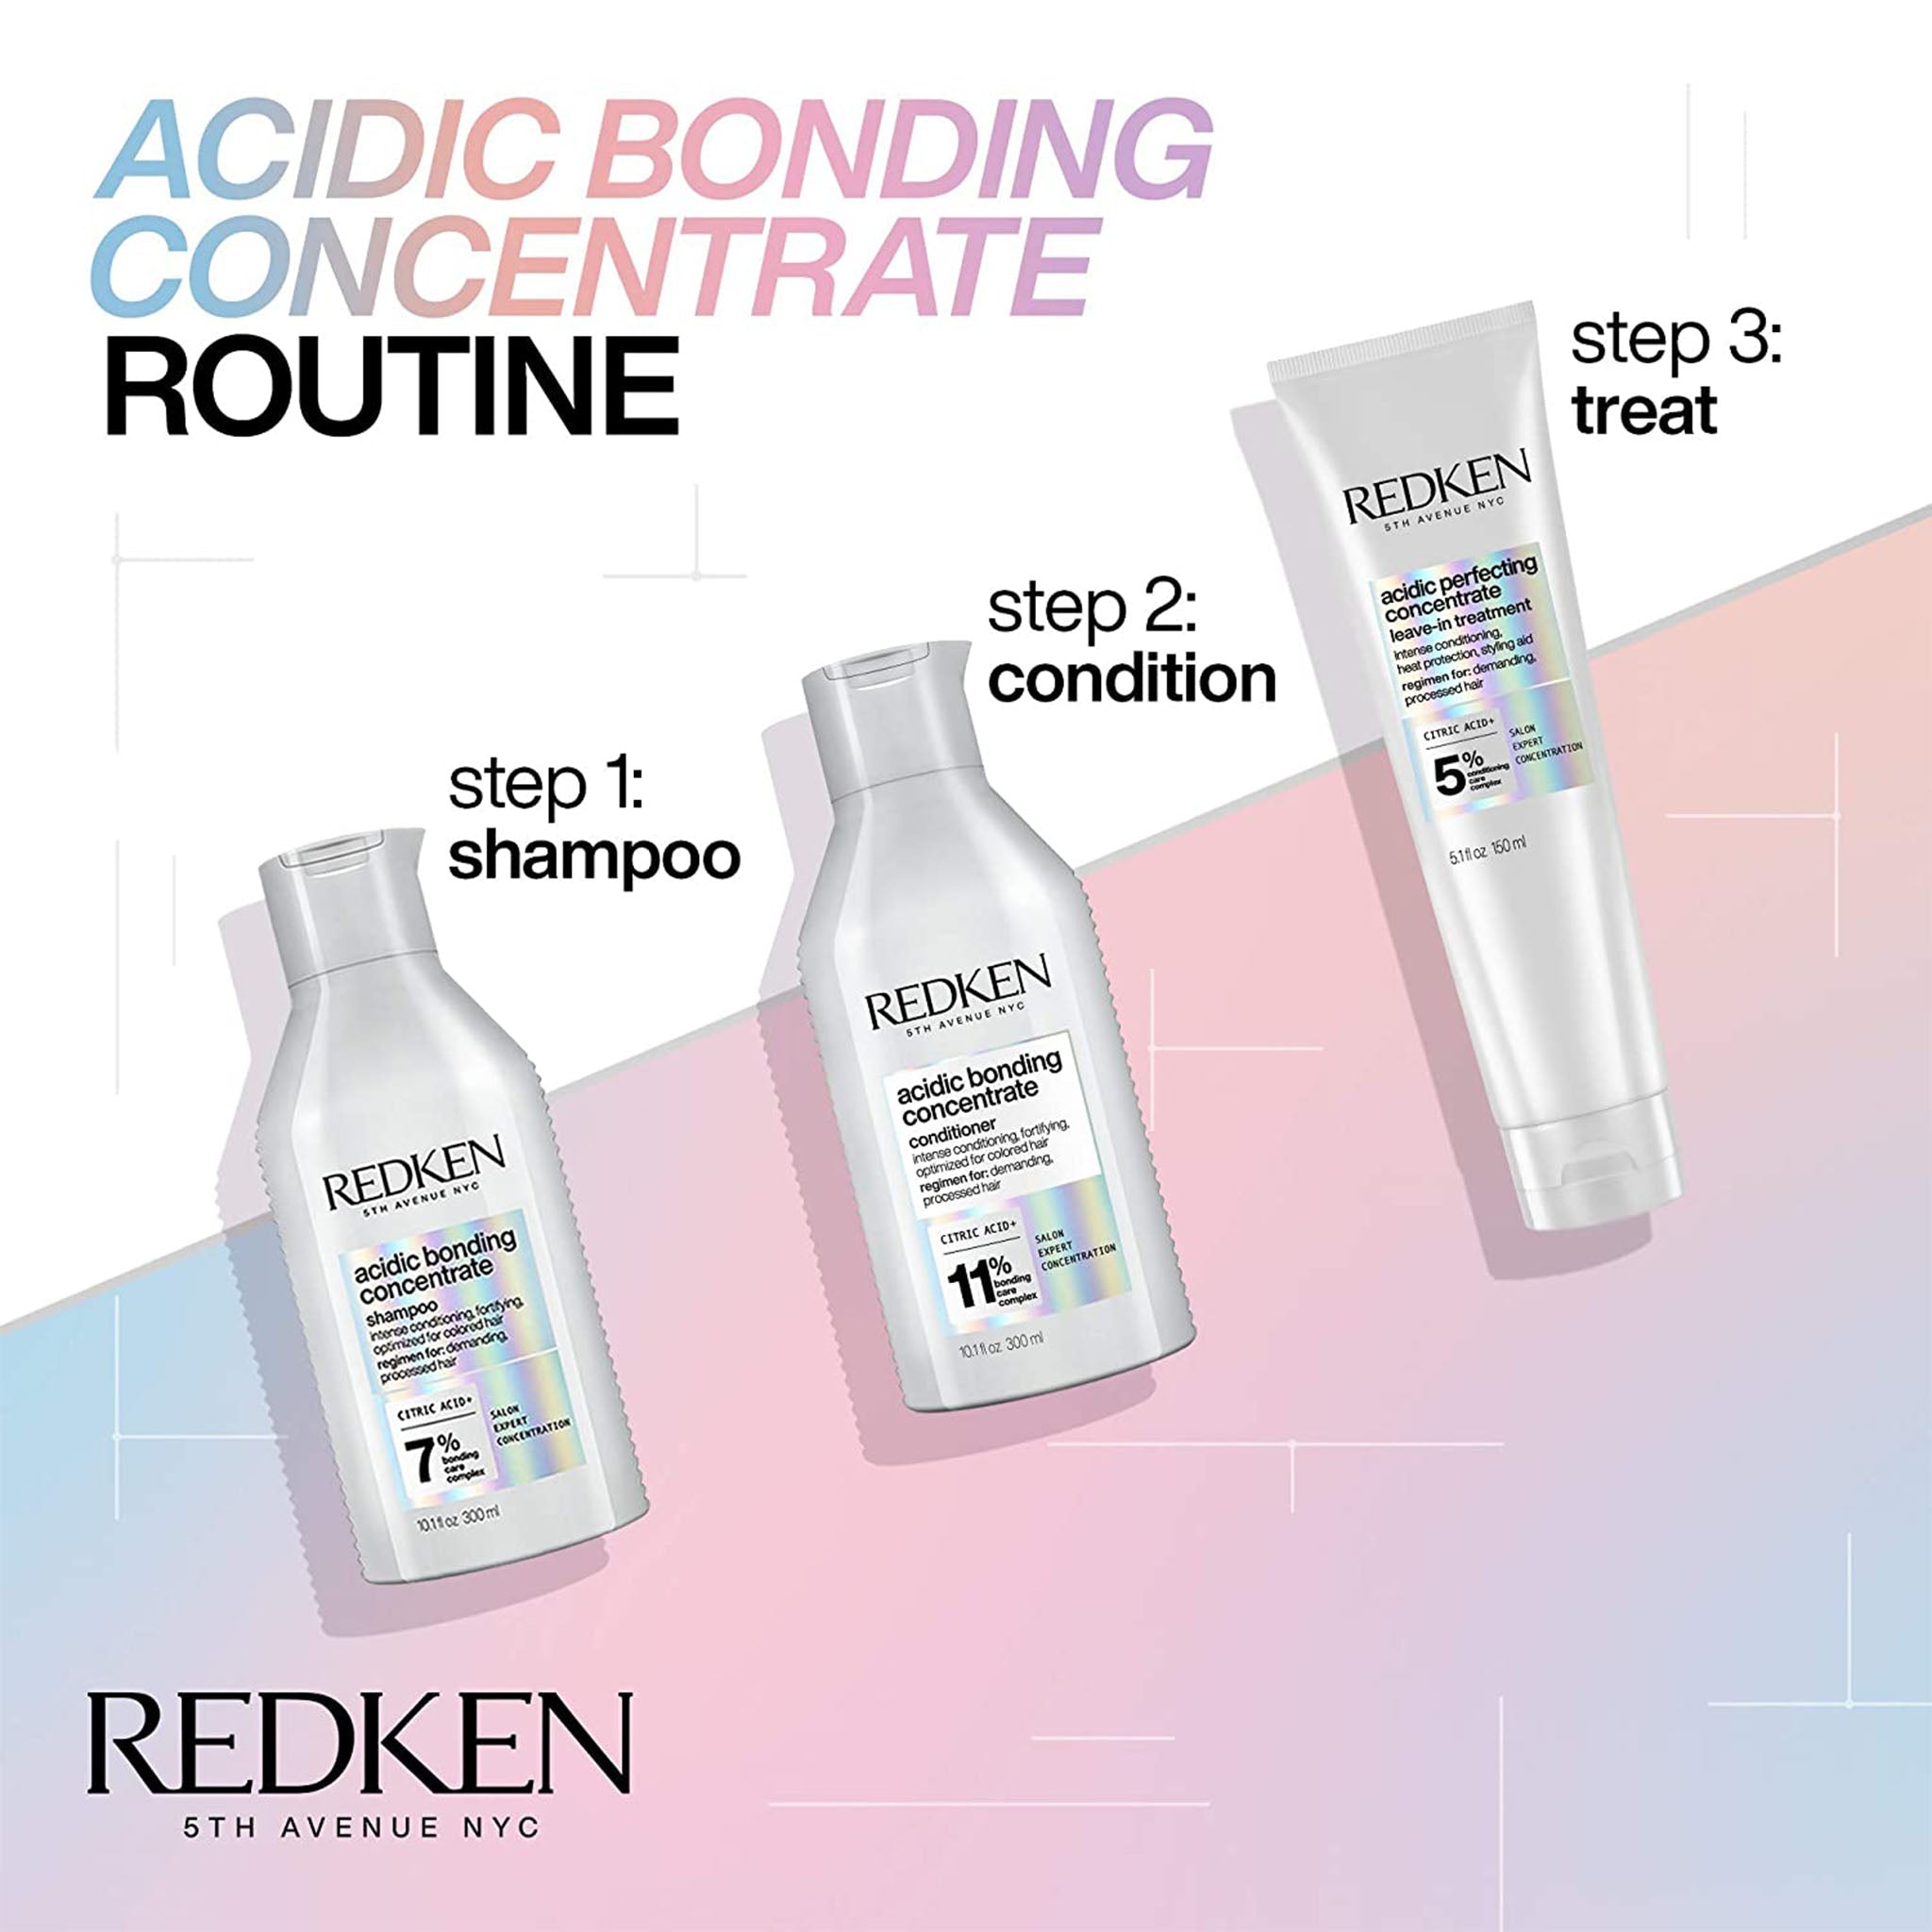 Redken. Revitalisant Acidic Bonding Concentrate 11% - 300ml - Concept C. Shop